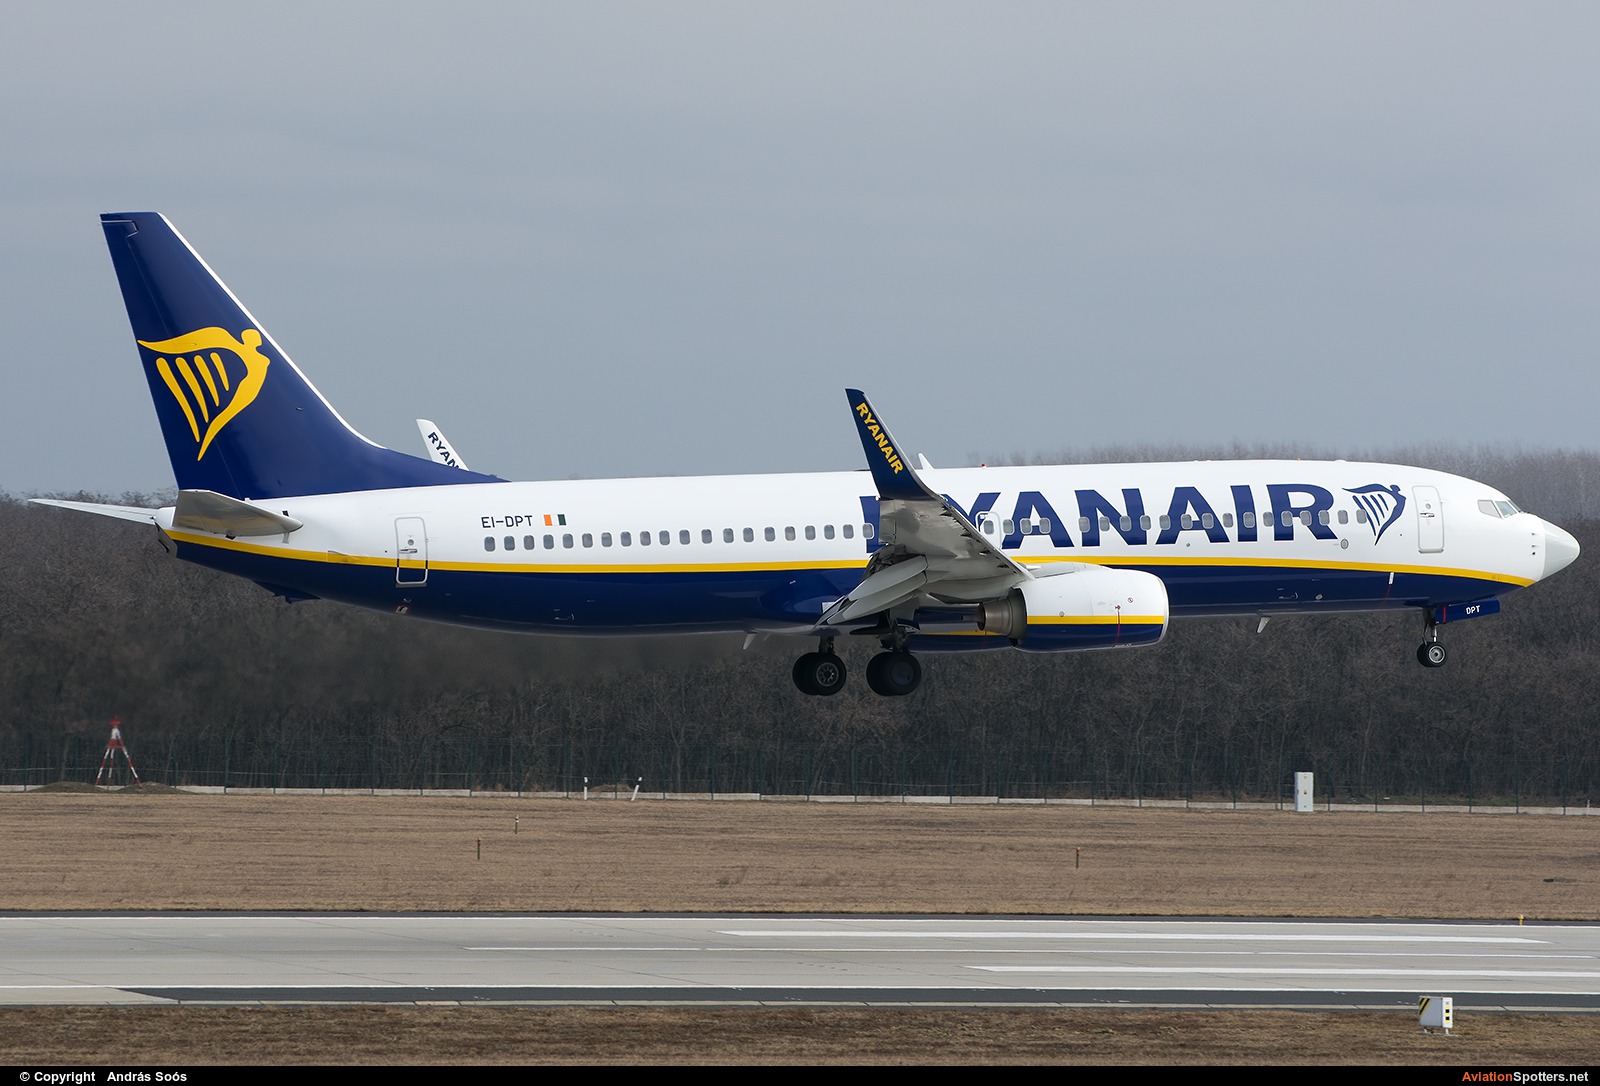 Ryanair  -  737-800  (EI-DPT) By András Soós (sas1965)